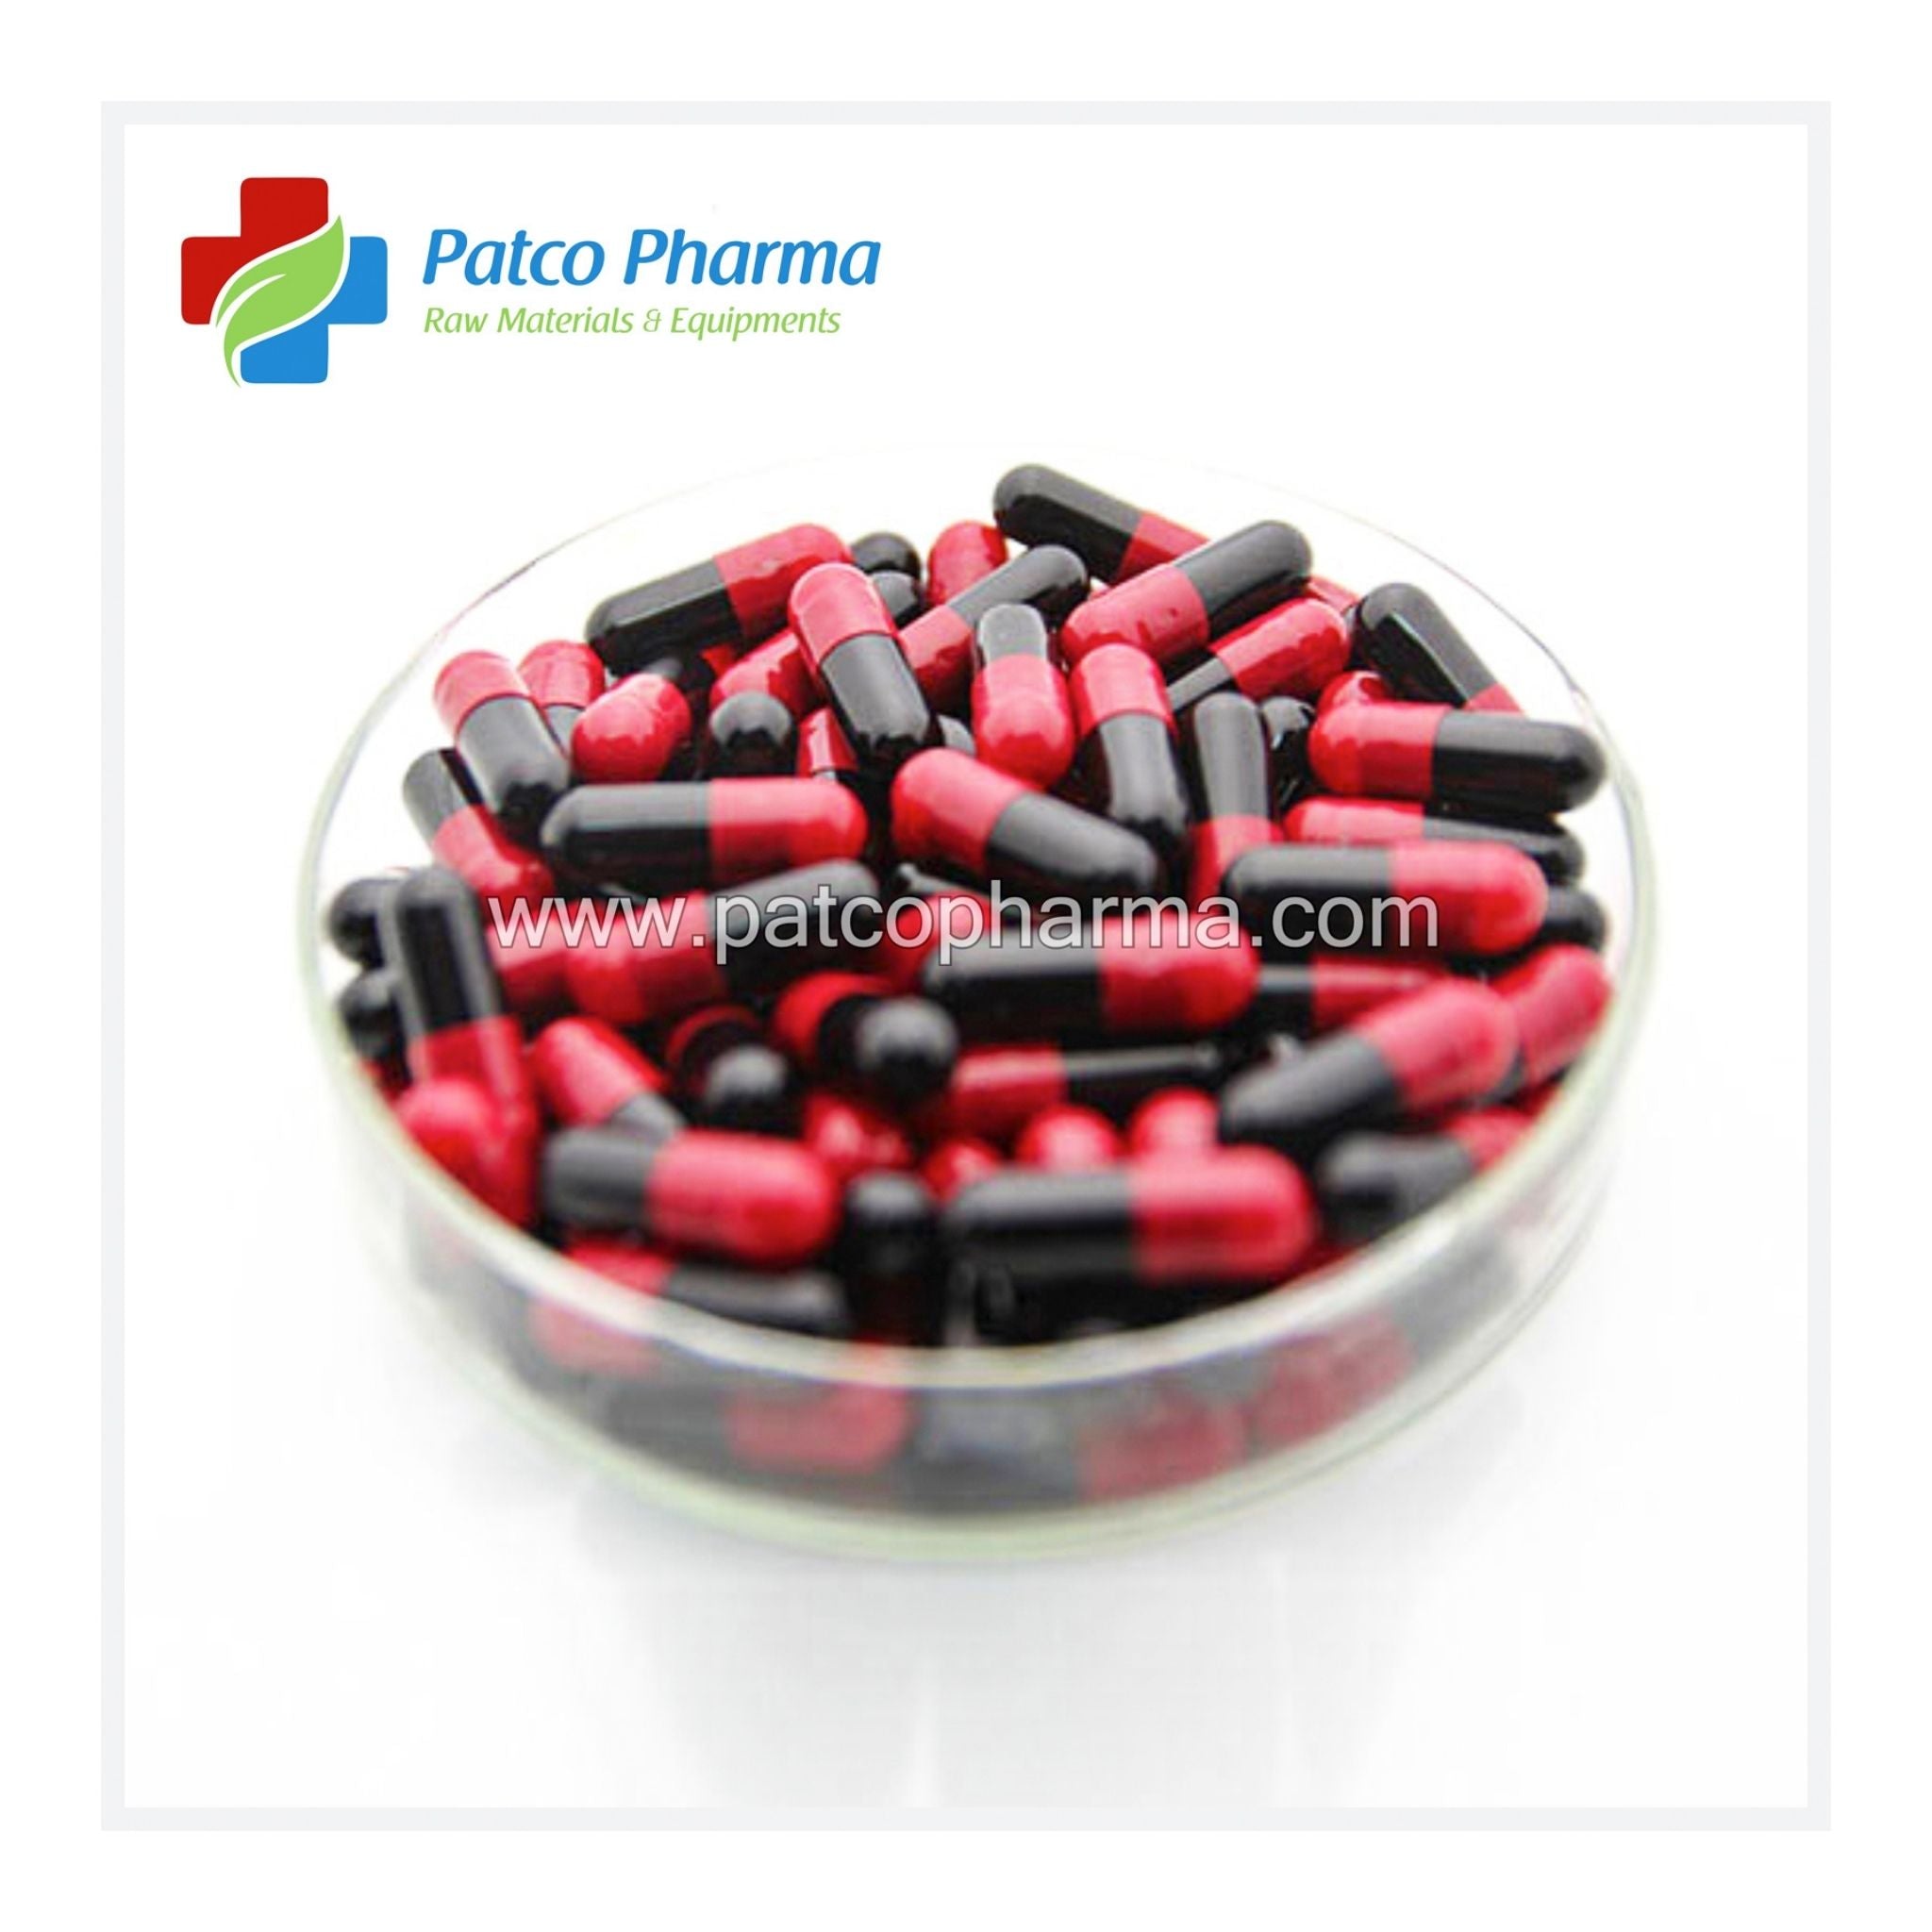 Empty Gelatin Capsule - Size 1, Patco Pharma, Gelatin Capsules, empty-gelatin-capsule-size-1, 400 mg, size 1 capsule, Patco Pharma